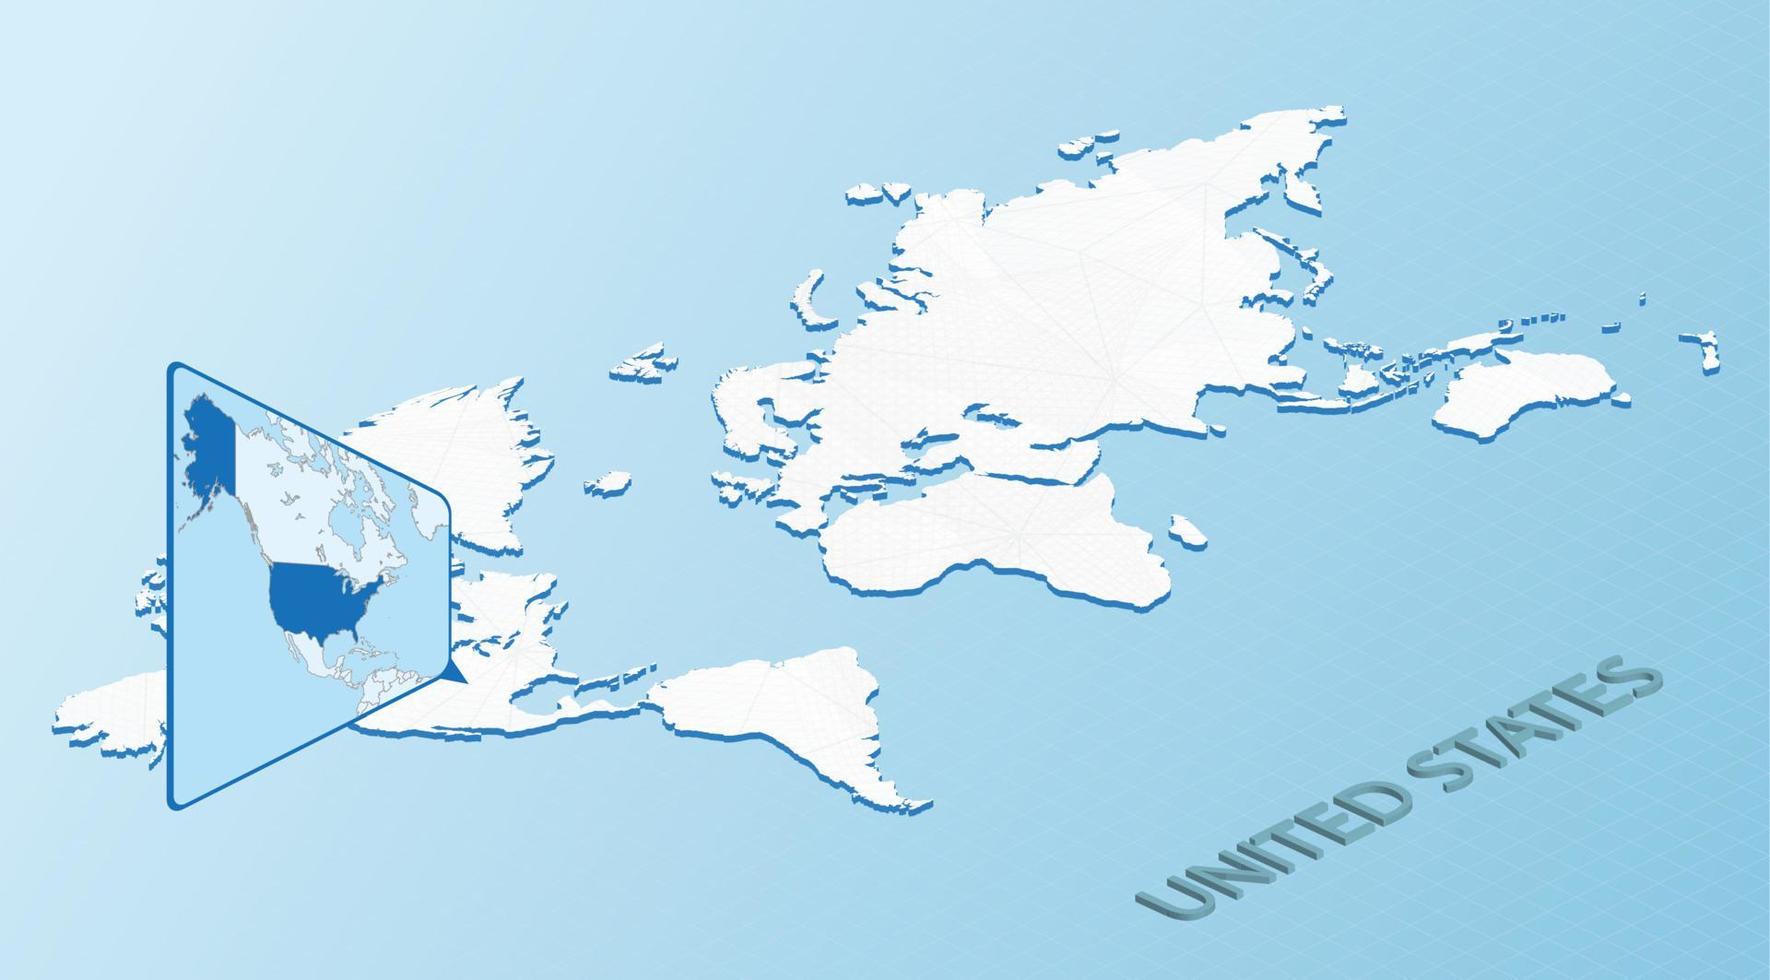 mapa-múndi em estilo isométrico com mapa detalhado dos eua. mapa dos eua azul claro com mapa-múndi abstrato. vetor